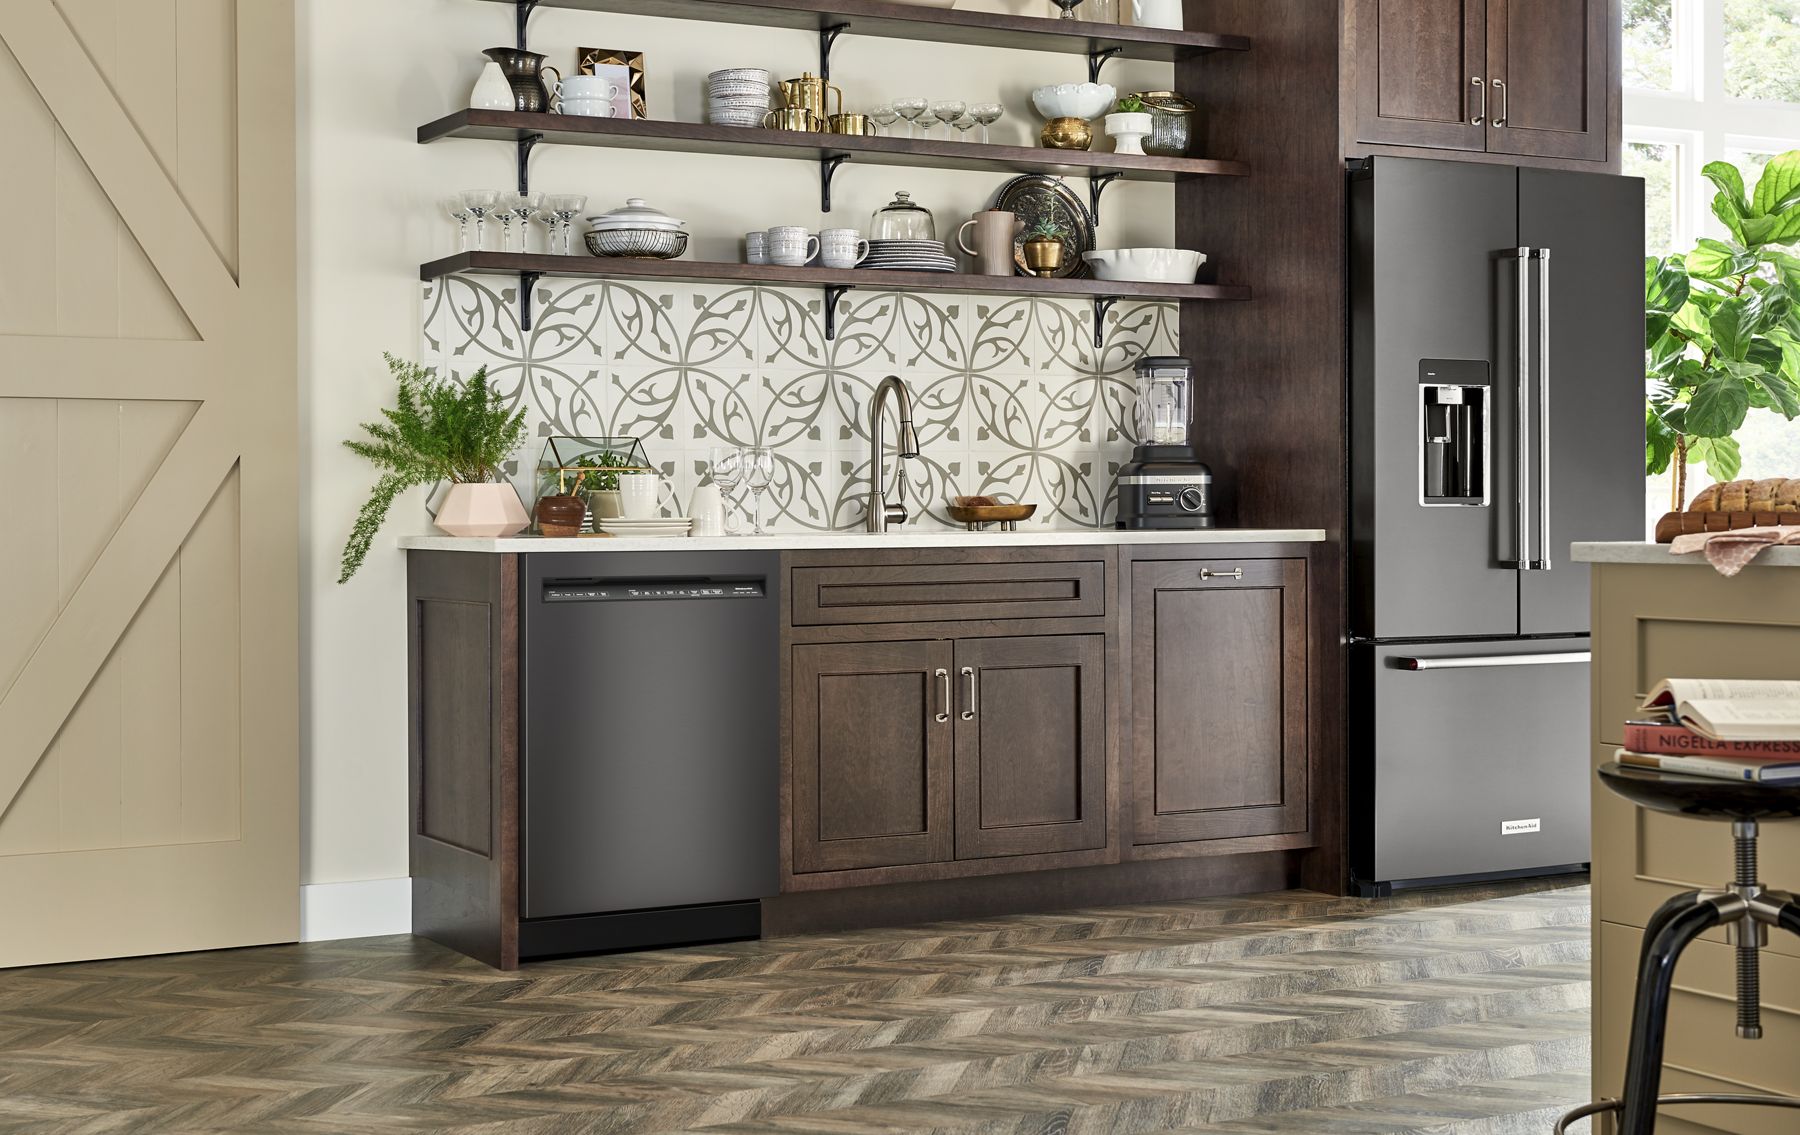 KitchenAid Appliances for Milwaukee Kitchens